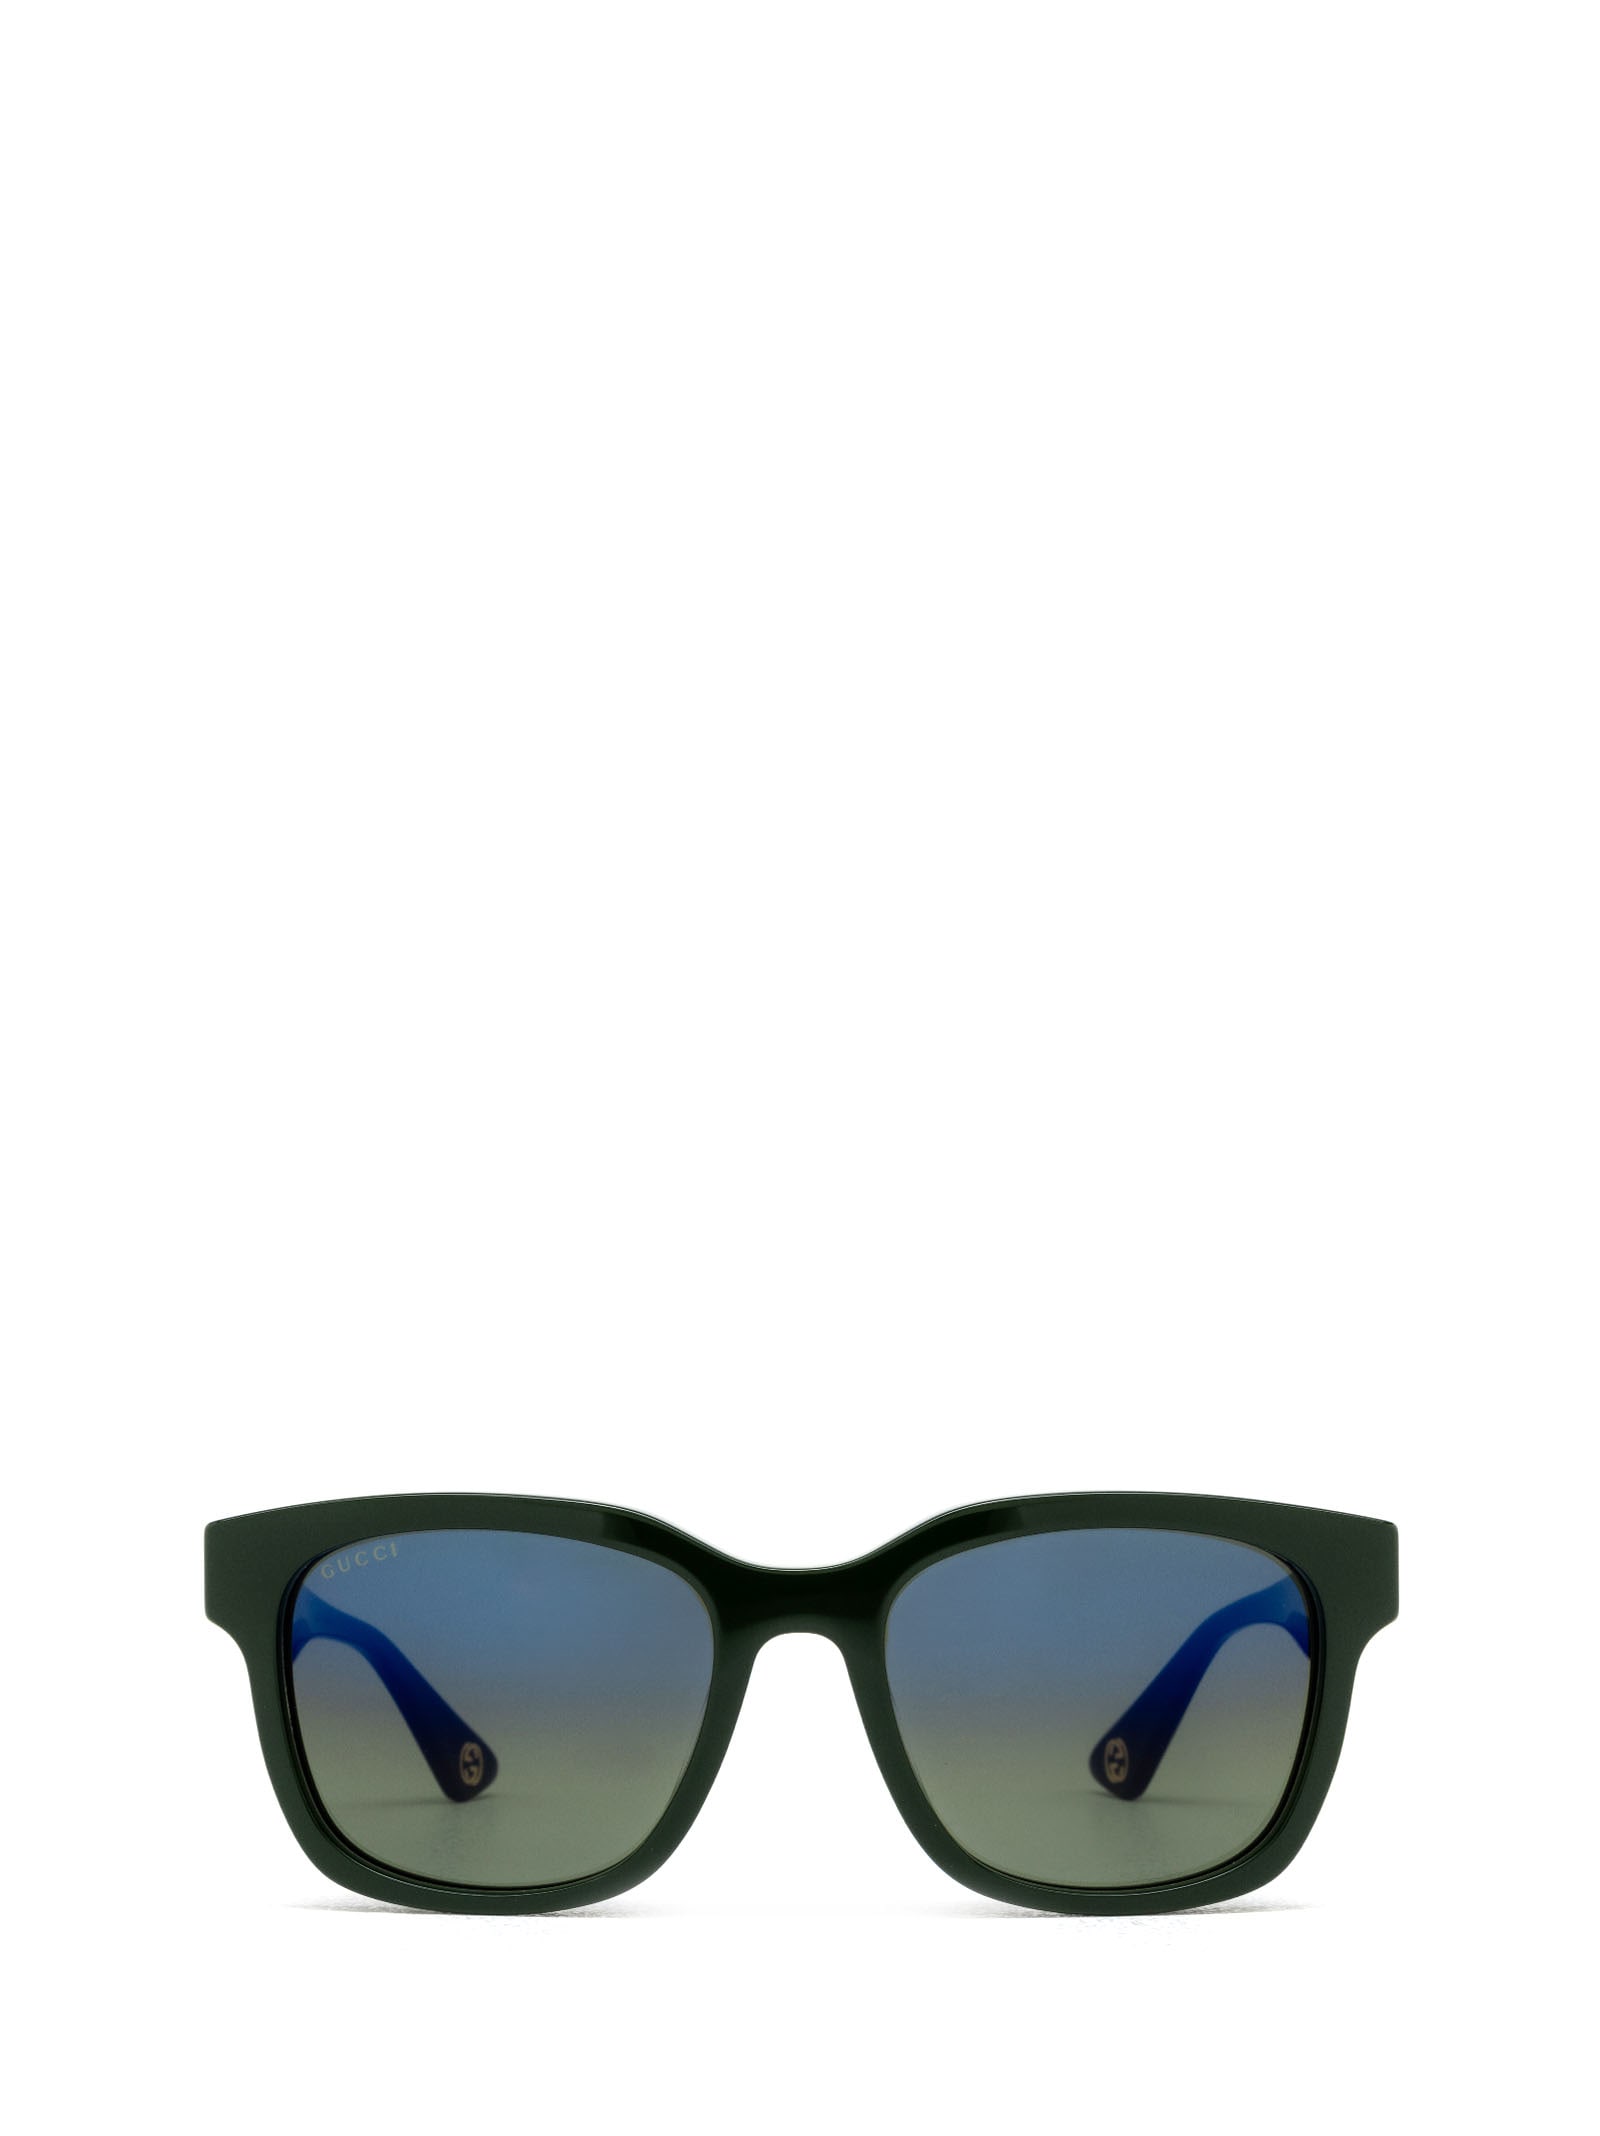 Shop Gucci Gg1639sa Green Sunglasses